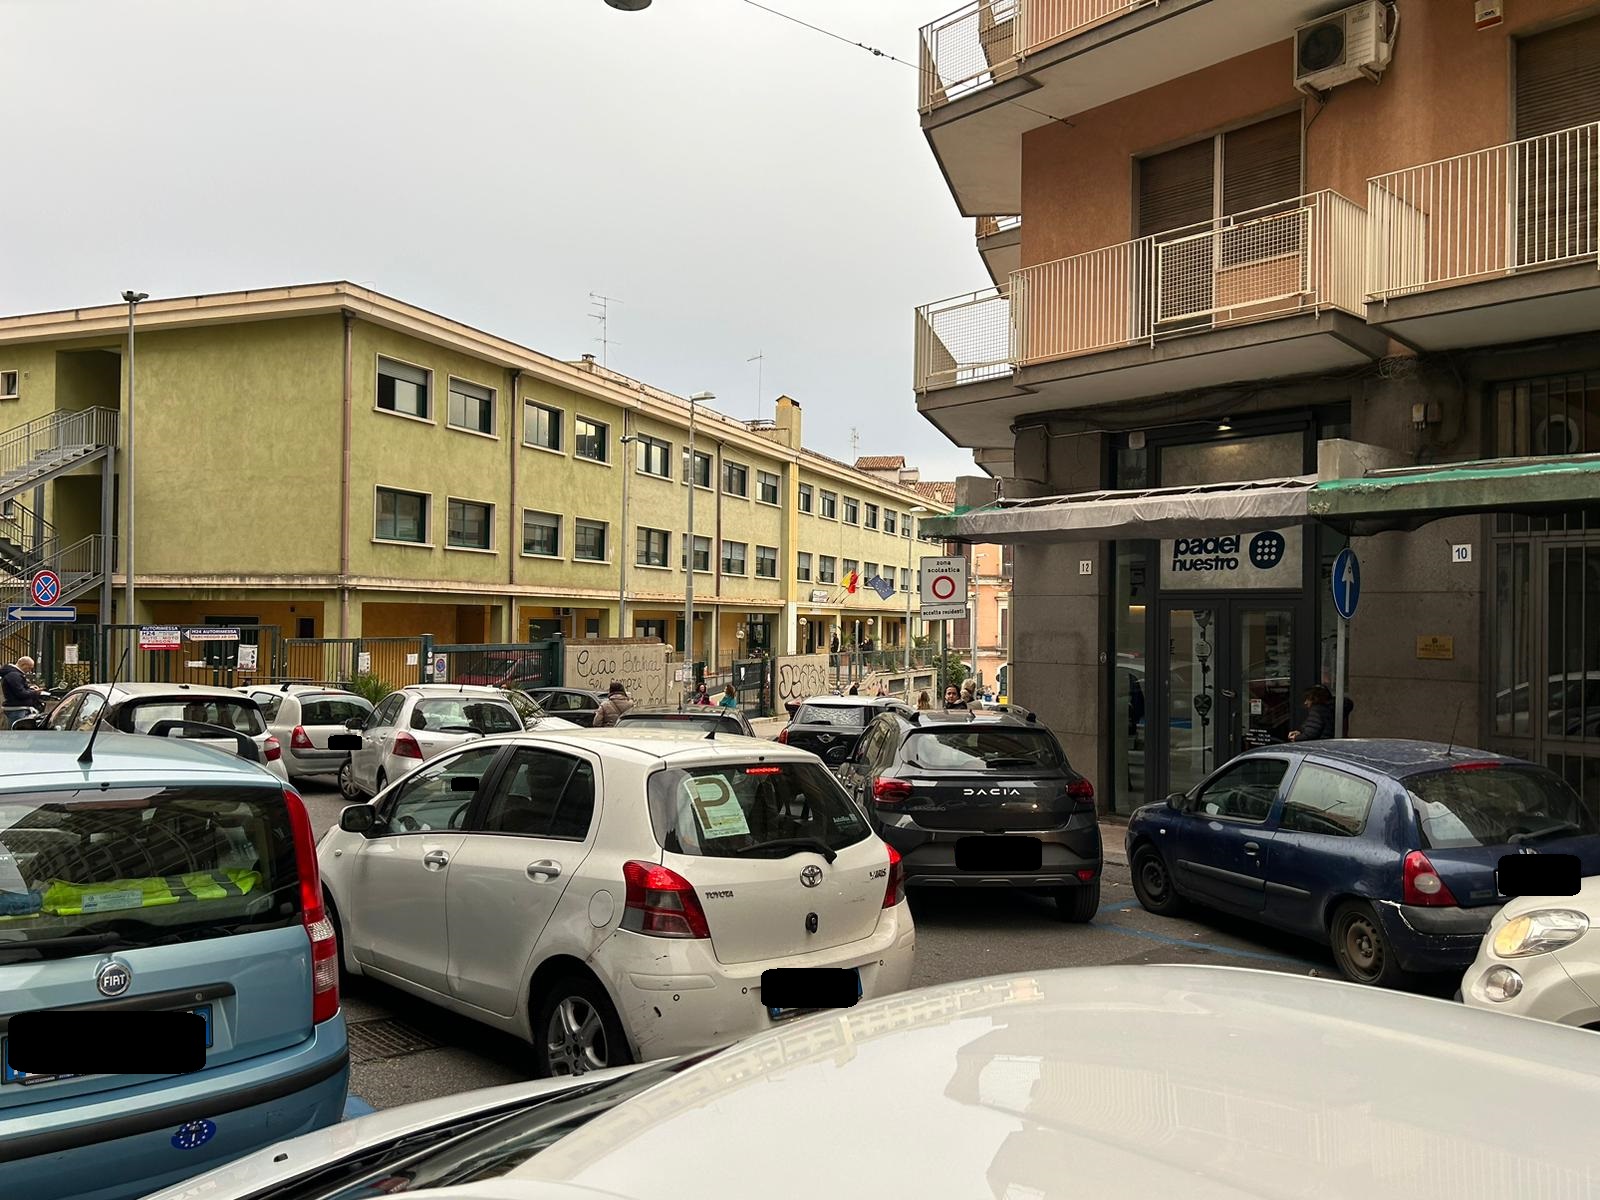 Viabilità definitiva per via Carbone e strade limitrofe: l’appello della presidente del III Municipio di Catania